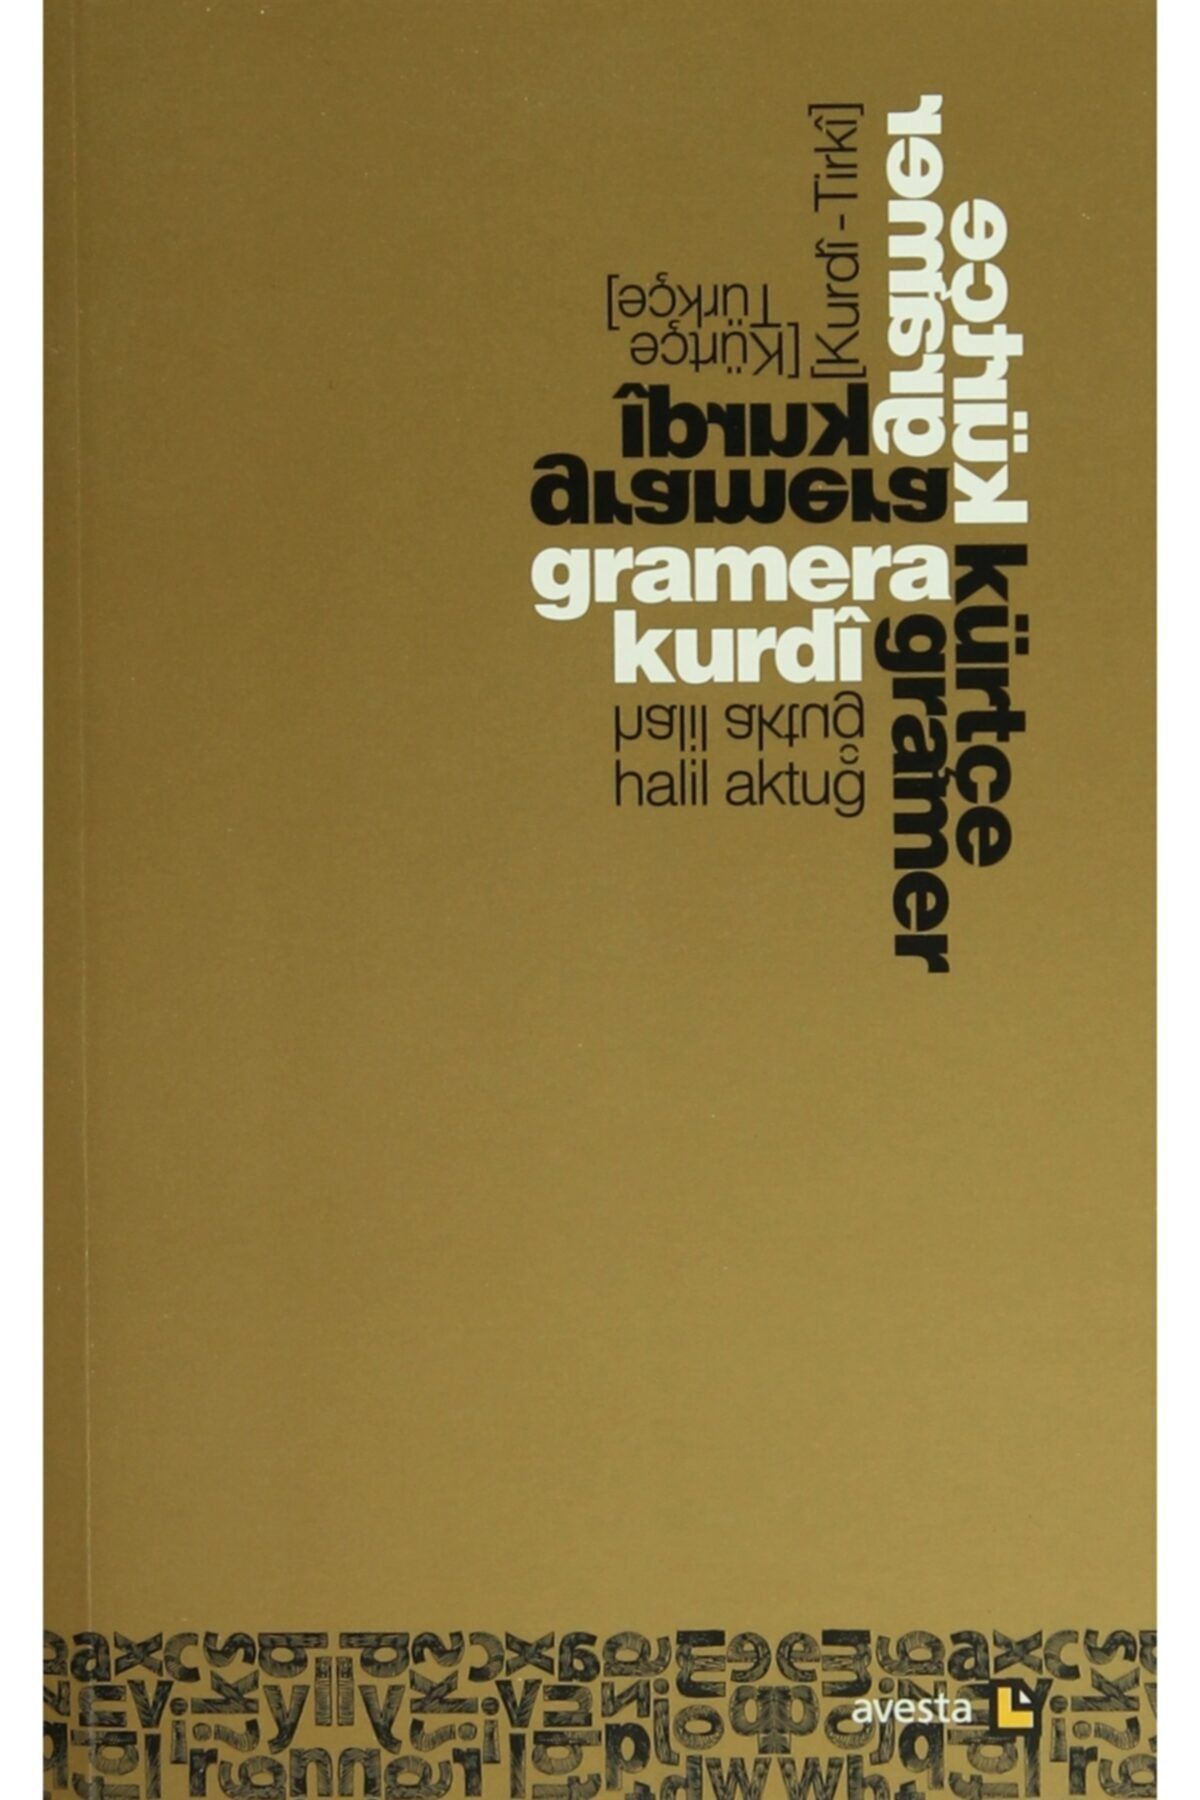 Avesta Yayınları Gramera Kurdı (kurdi - Tirki) - Kürtçe Gramer (kürtçe - Türkçe) - Halil Aktuğ 9786055279233